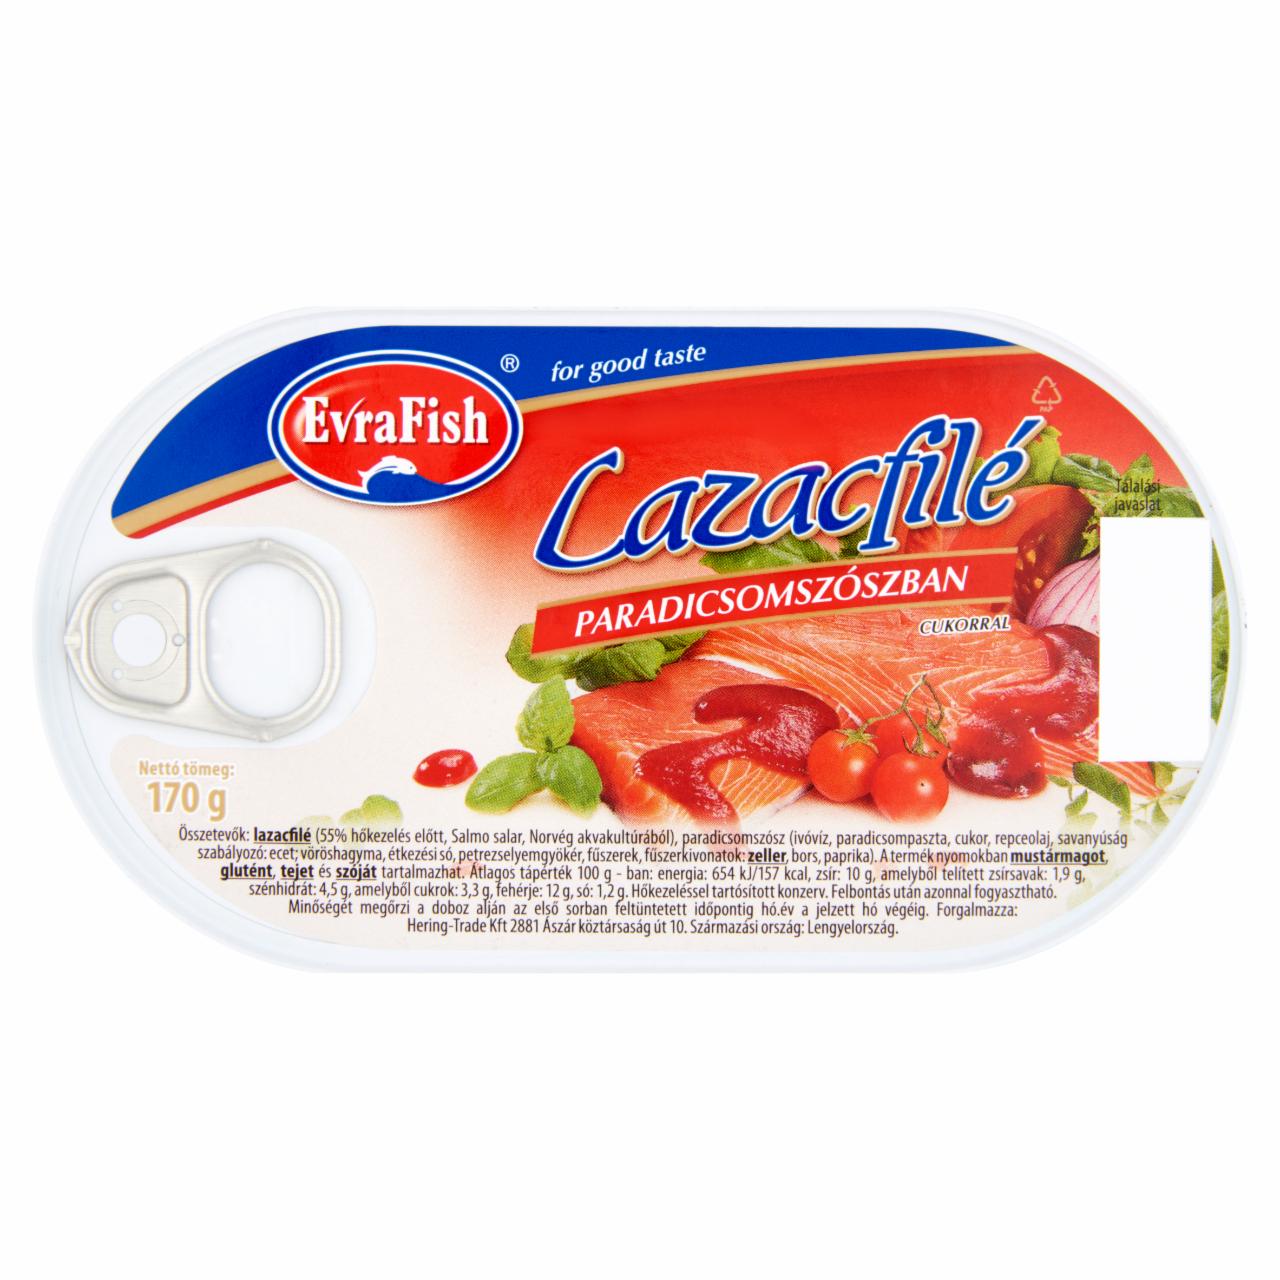 Képek - Evrafish lazacfilé paradicsomszószban cukorral 170 g